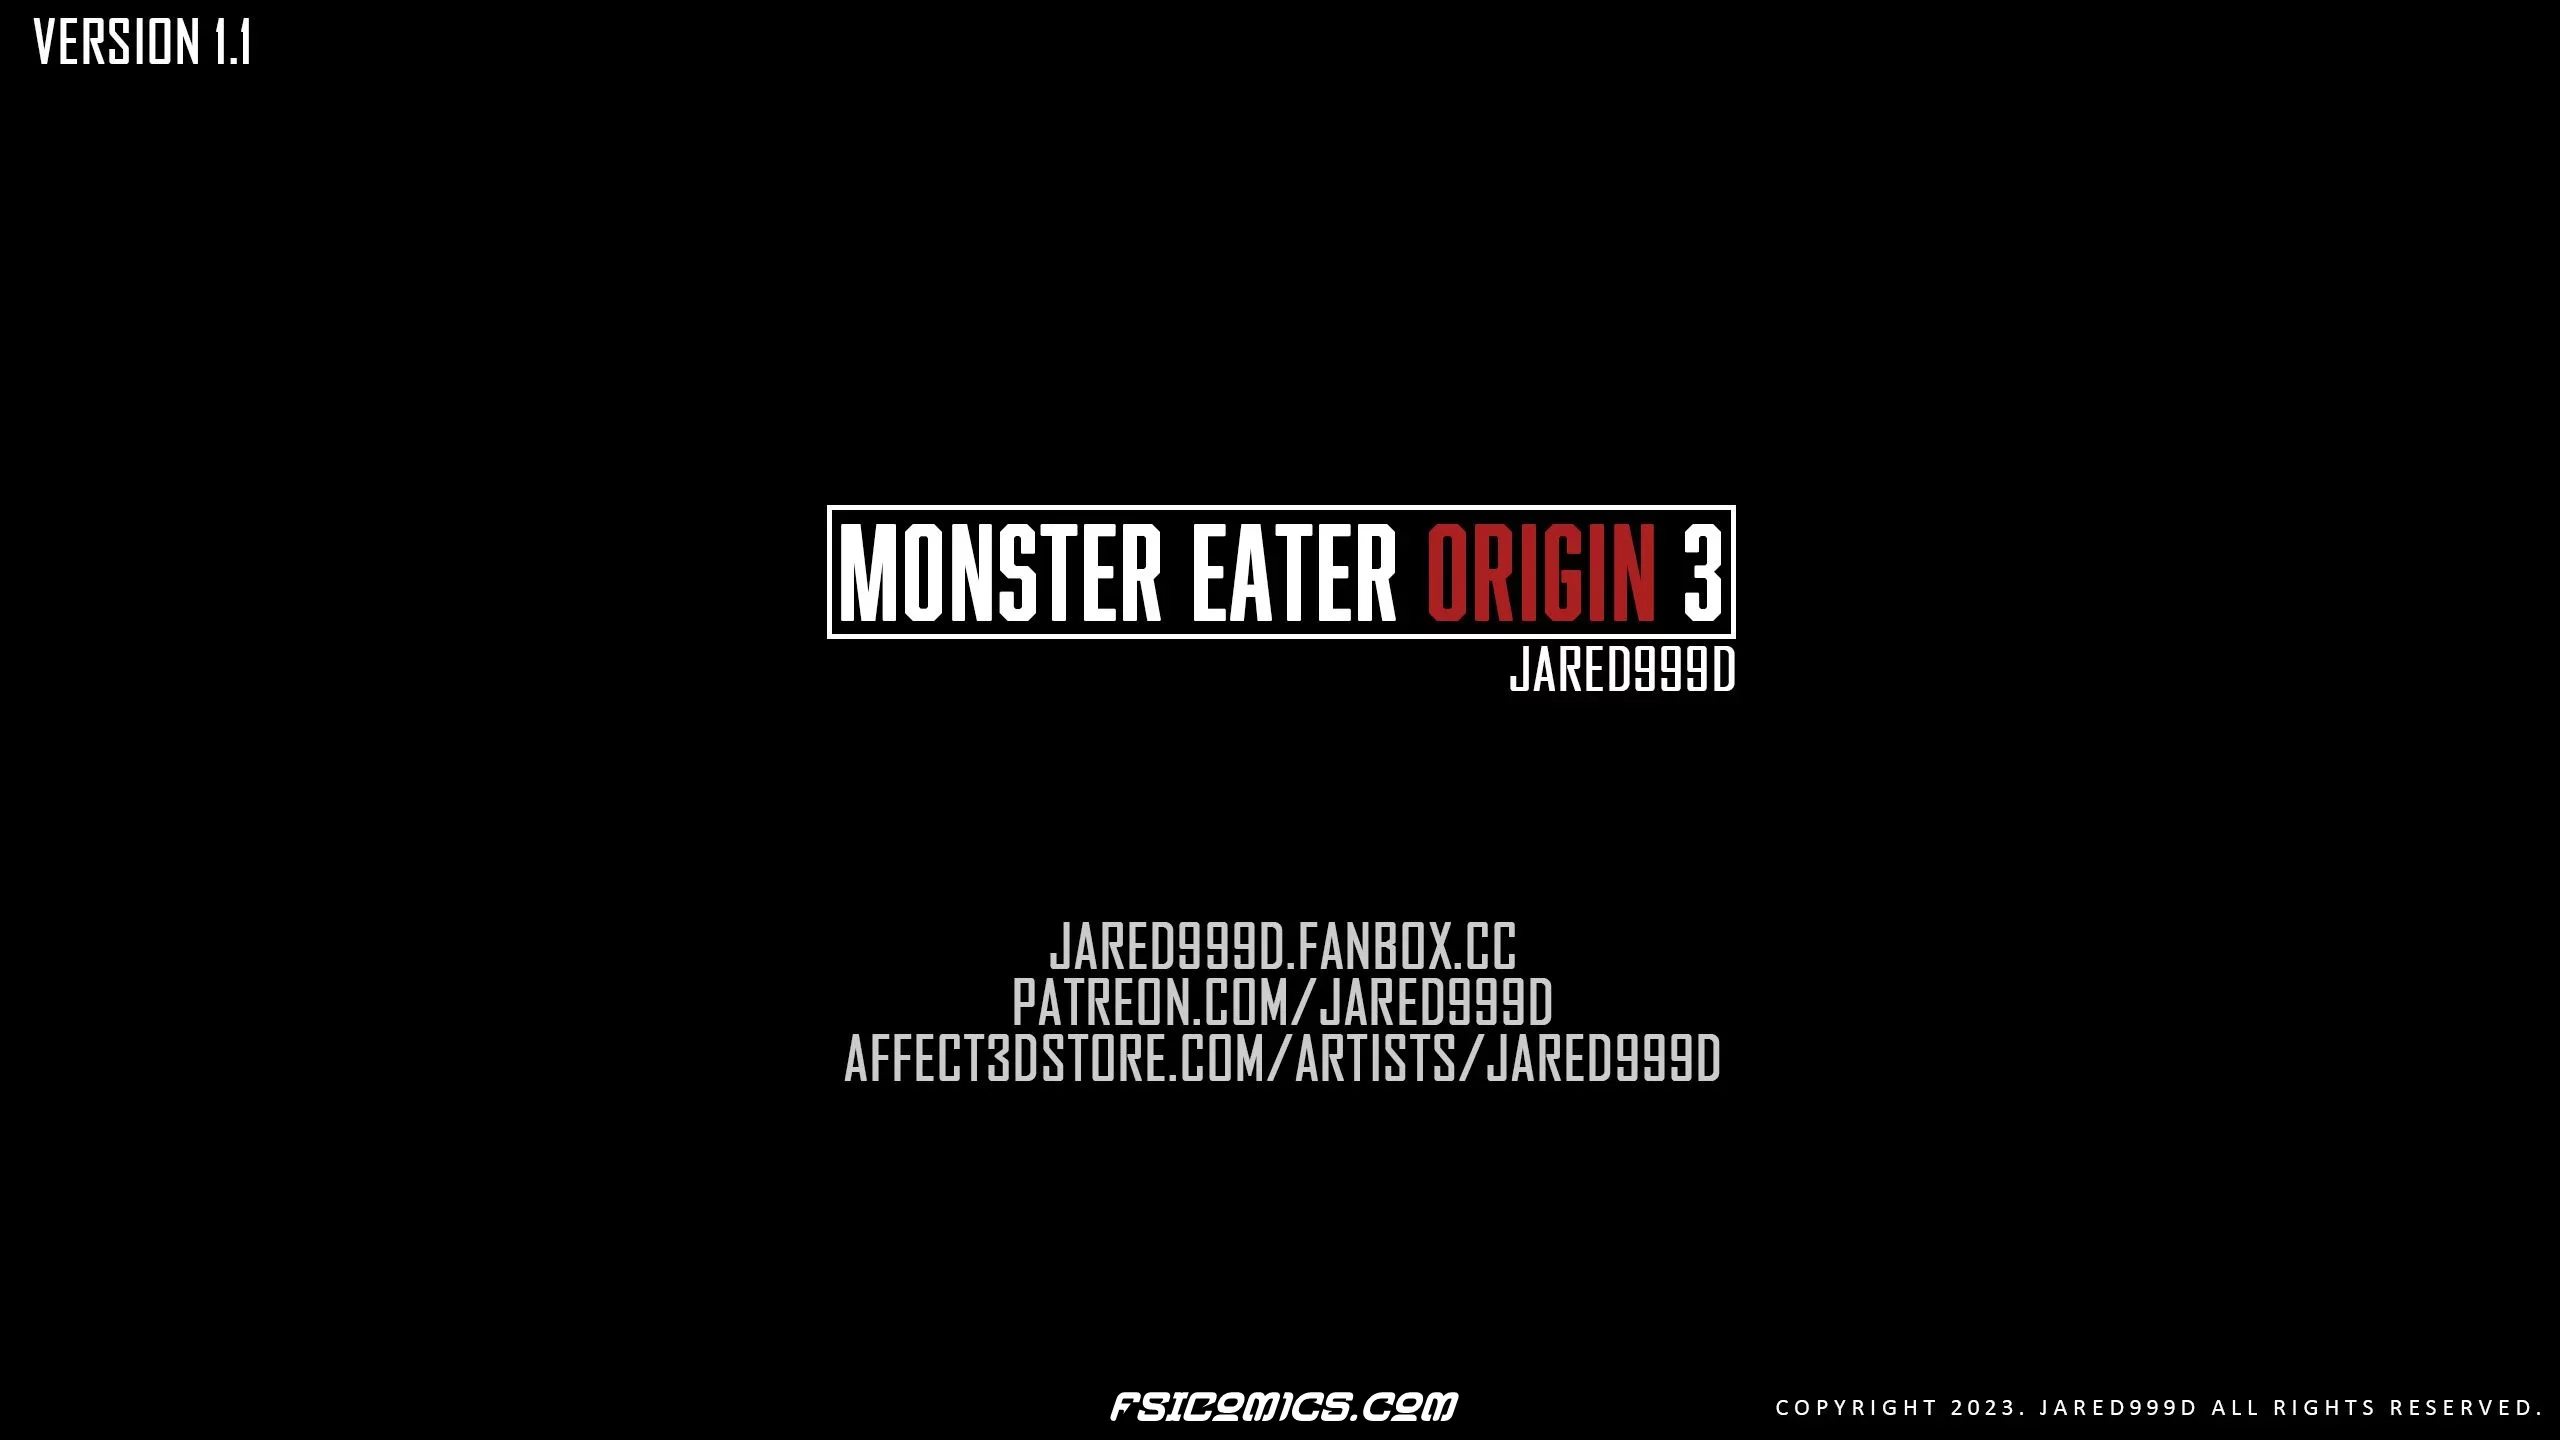 Monster Eater Origins Chapter 3 - Jared999D - 351 - FSIComics